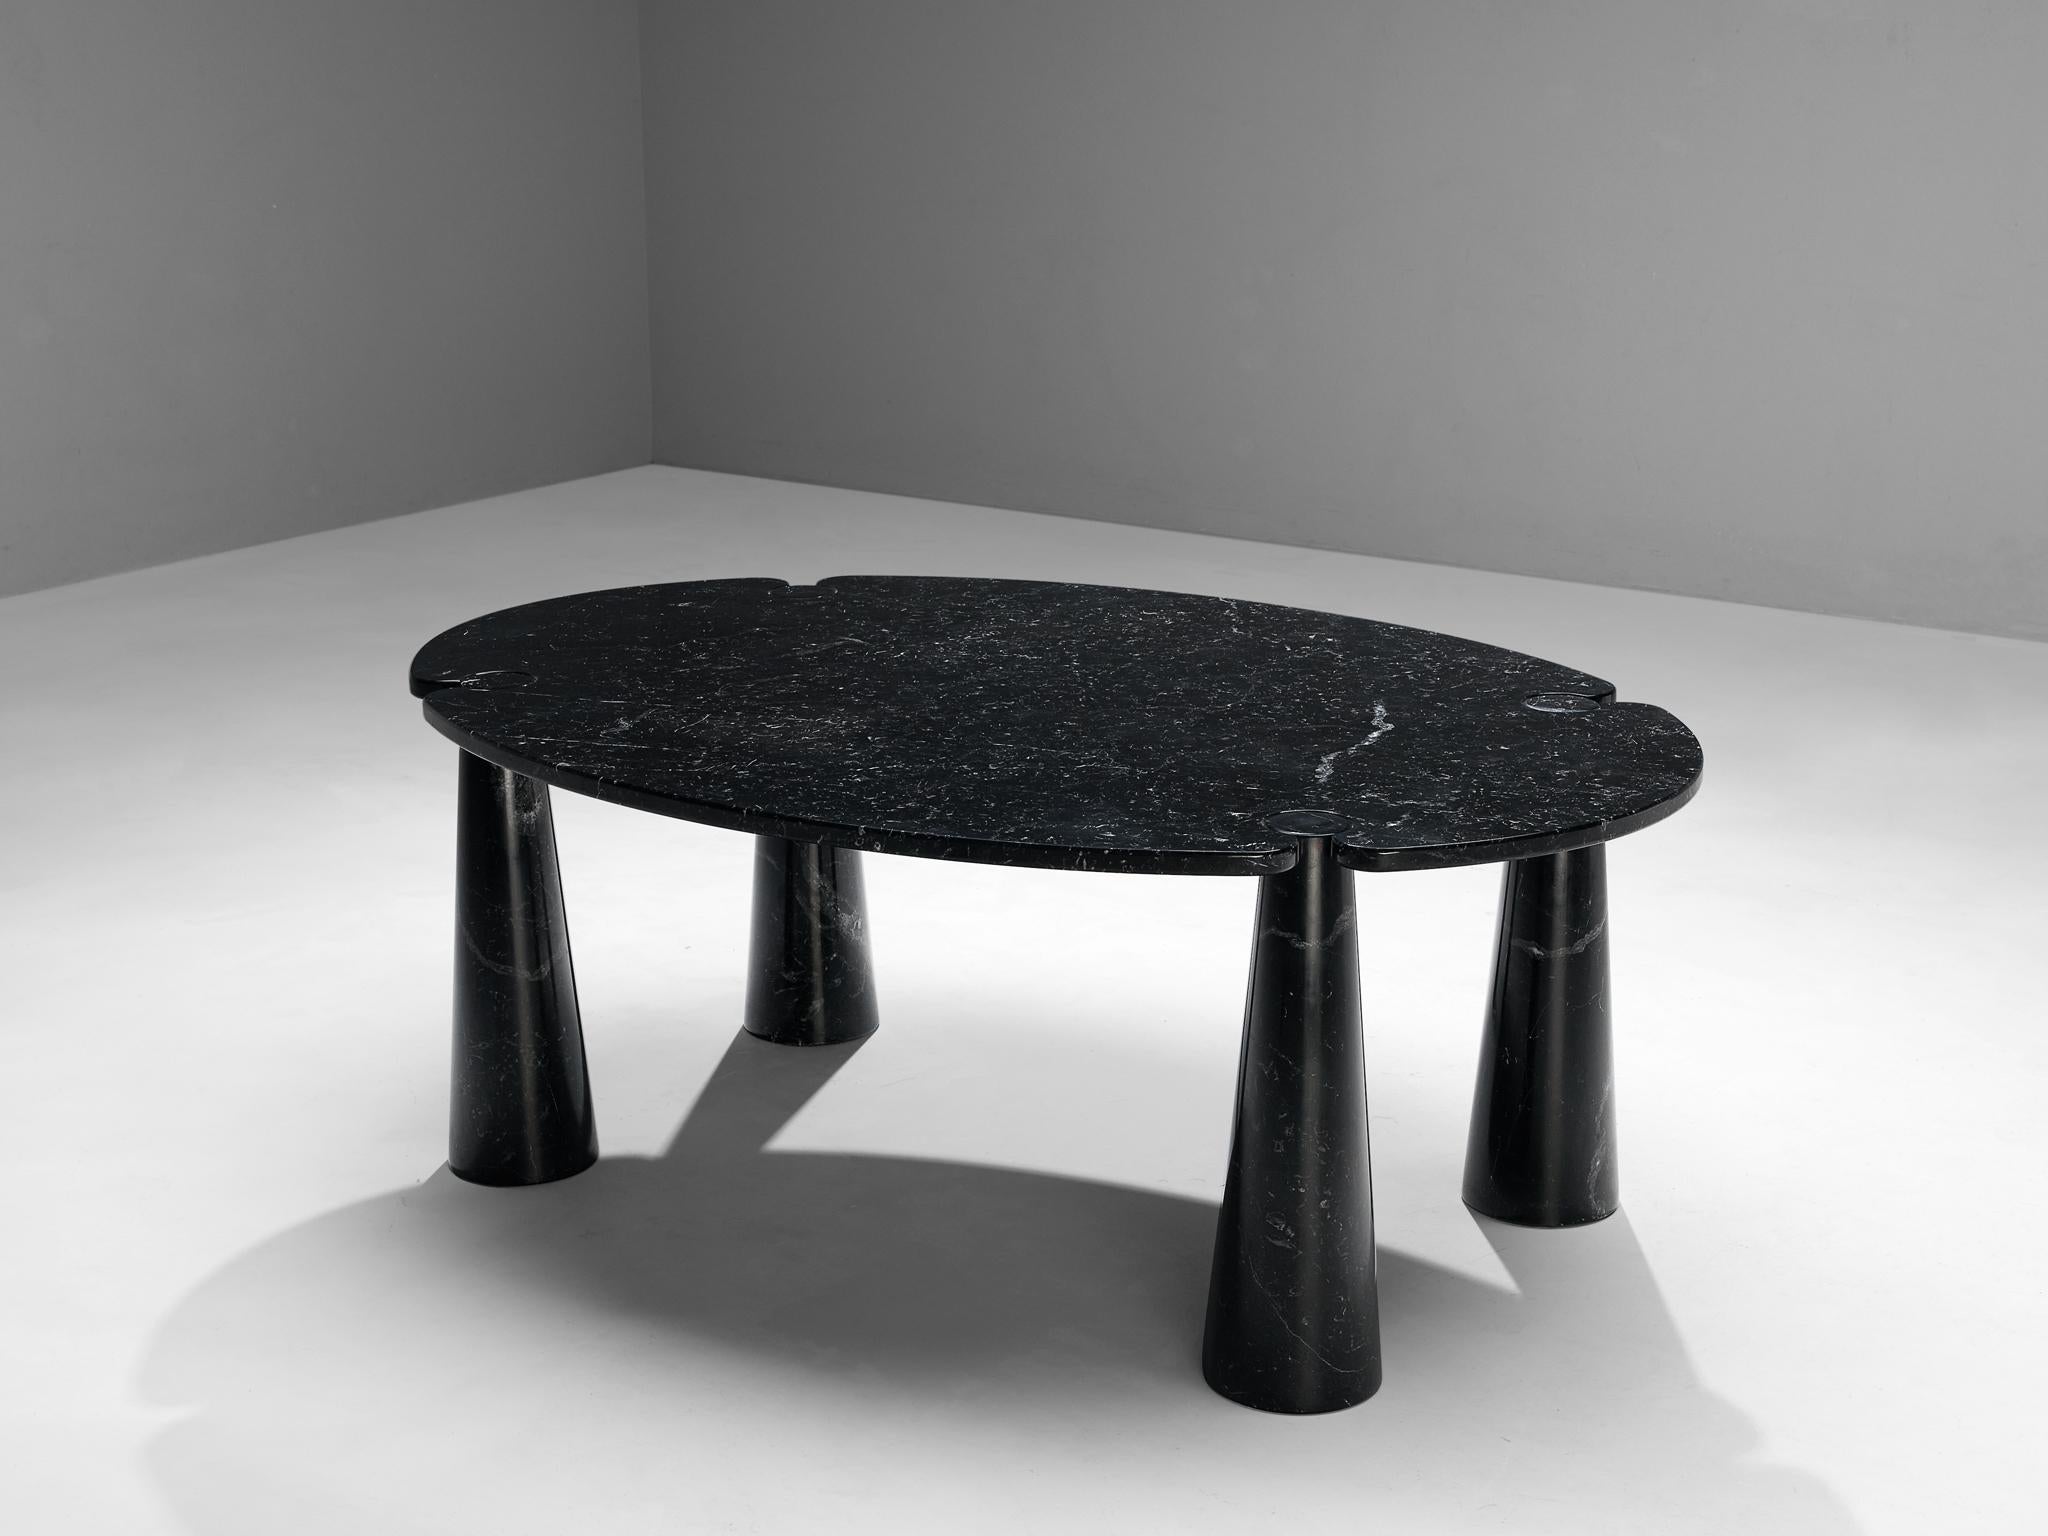 Angelo Mangiarotti pour Skipper, table de salle à manger 'Eros', marbre Marquina, 1971

Cette table sculpturale d'Angelo Mangiarotti est un exemple habile de design postmoderne. La table est exécutée en marbre noir Marquina. Le plateau rond ne